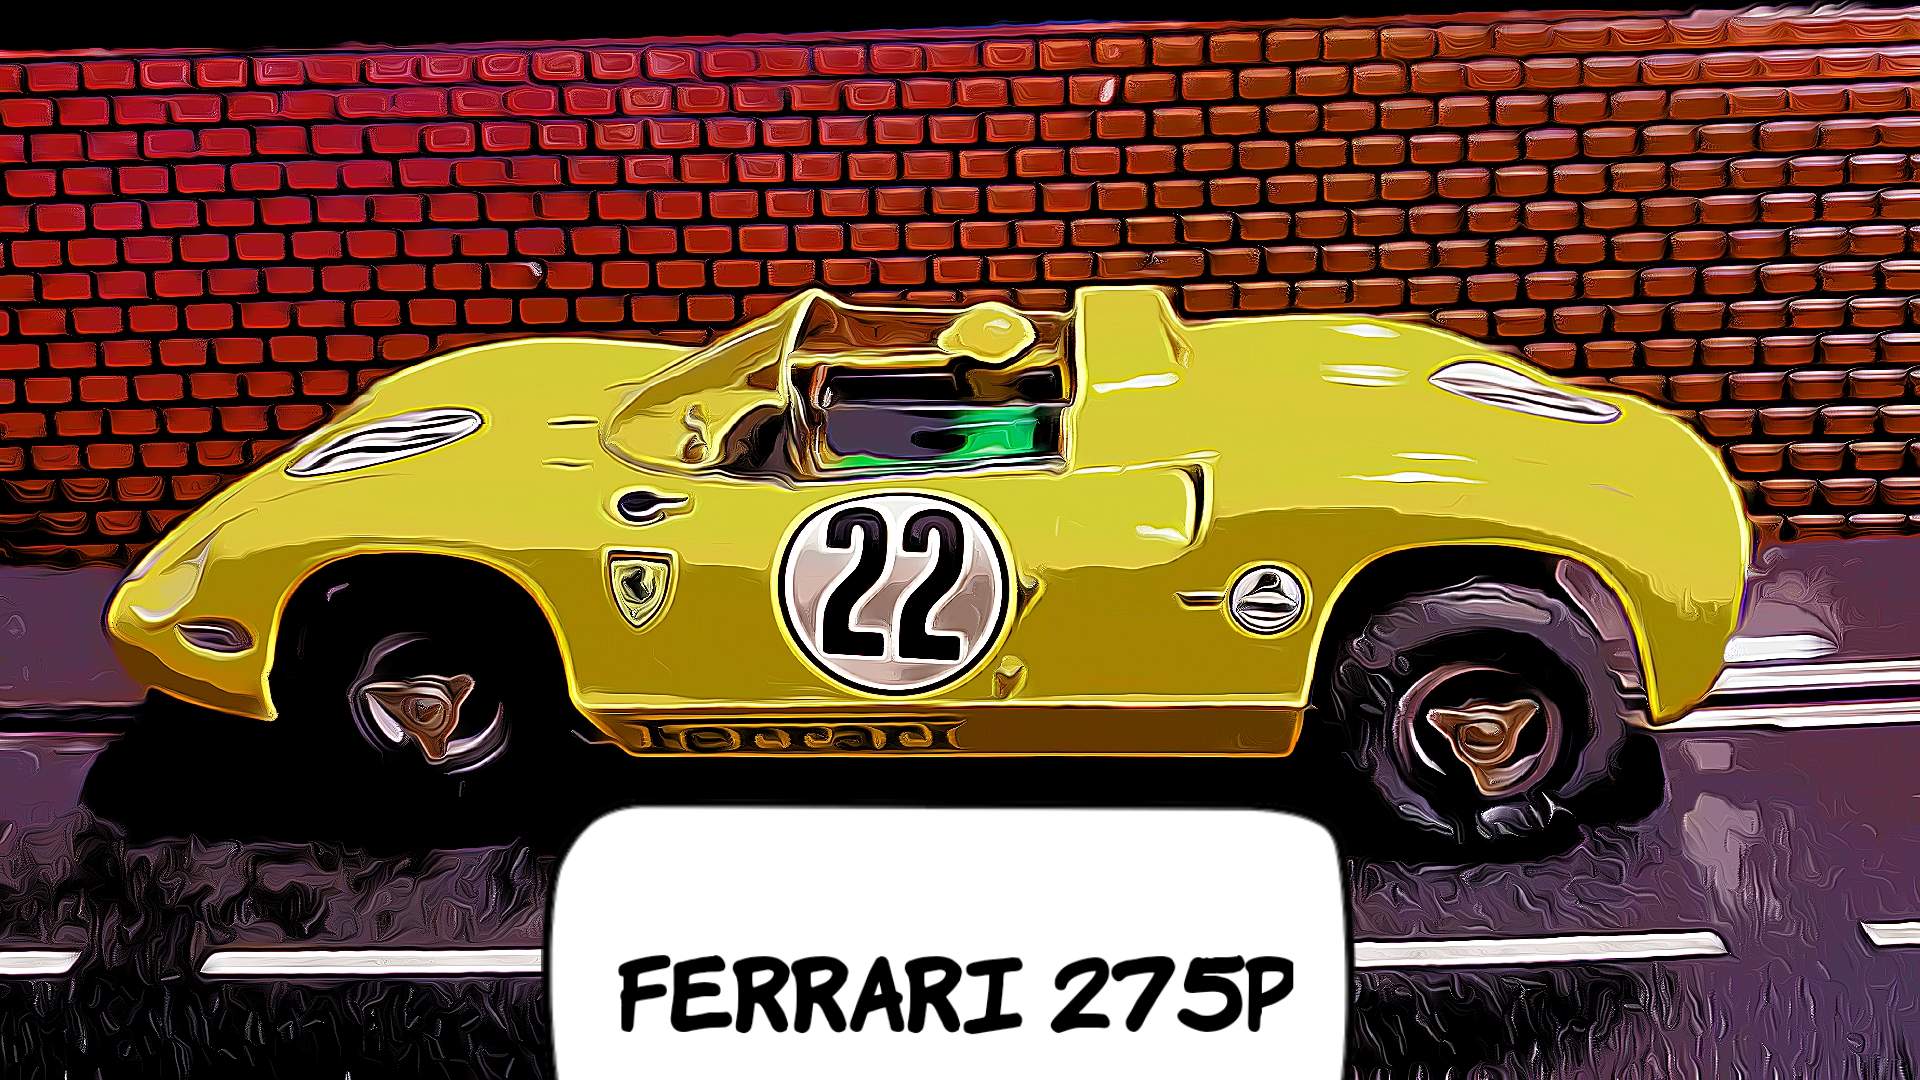 * Sale * COX 1964 Ferrari 275 P Car 22 in Giallo Modena Yellow 1:24 Scale Slot Car